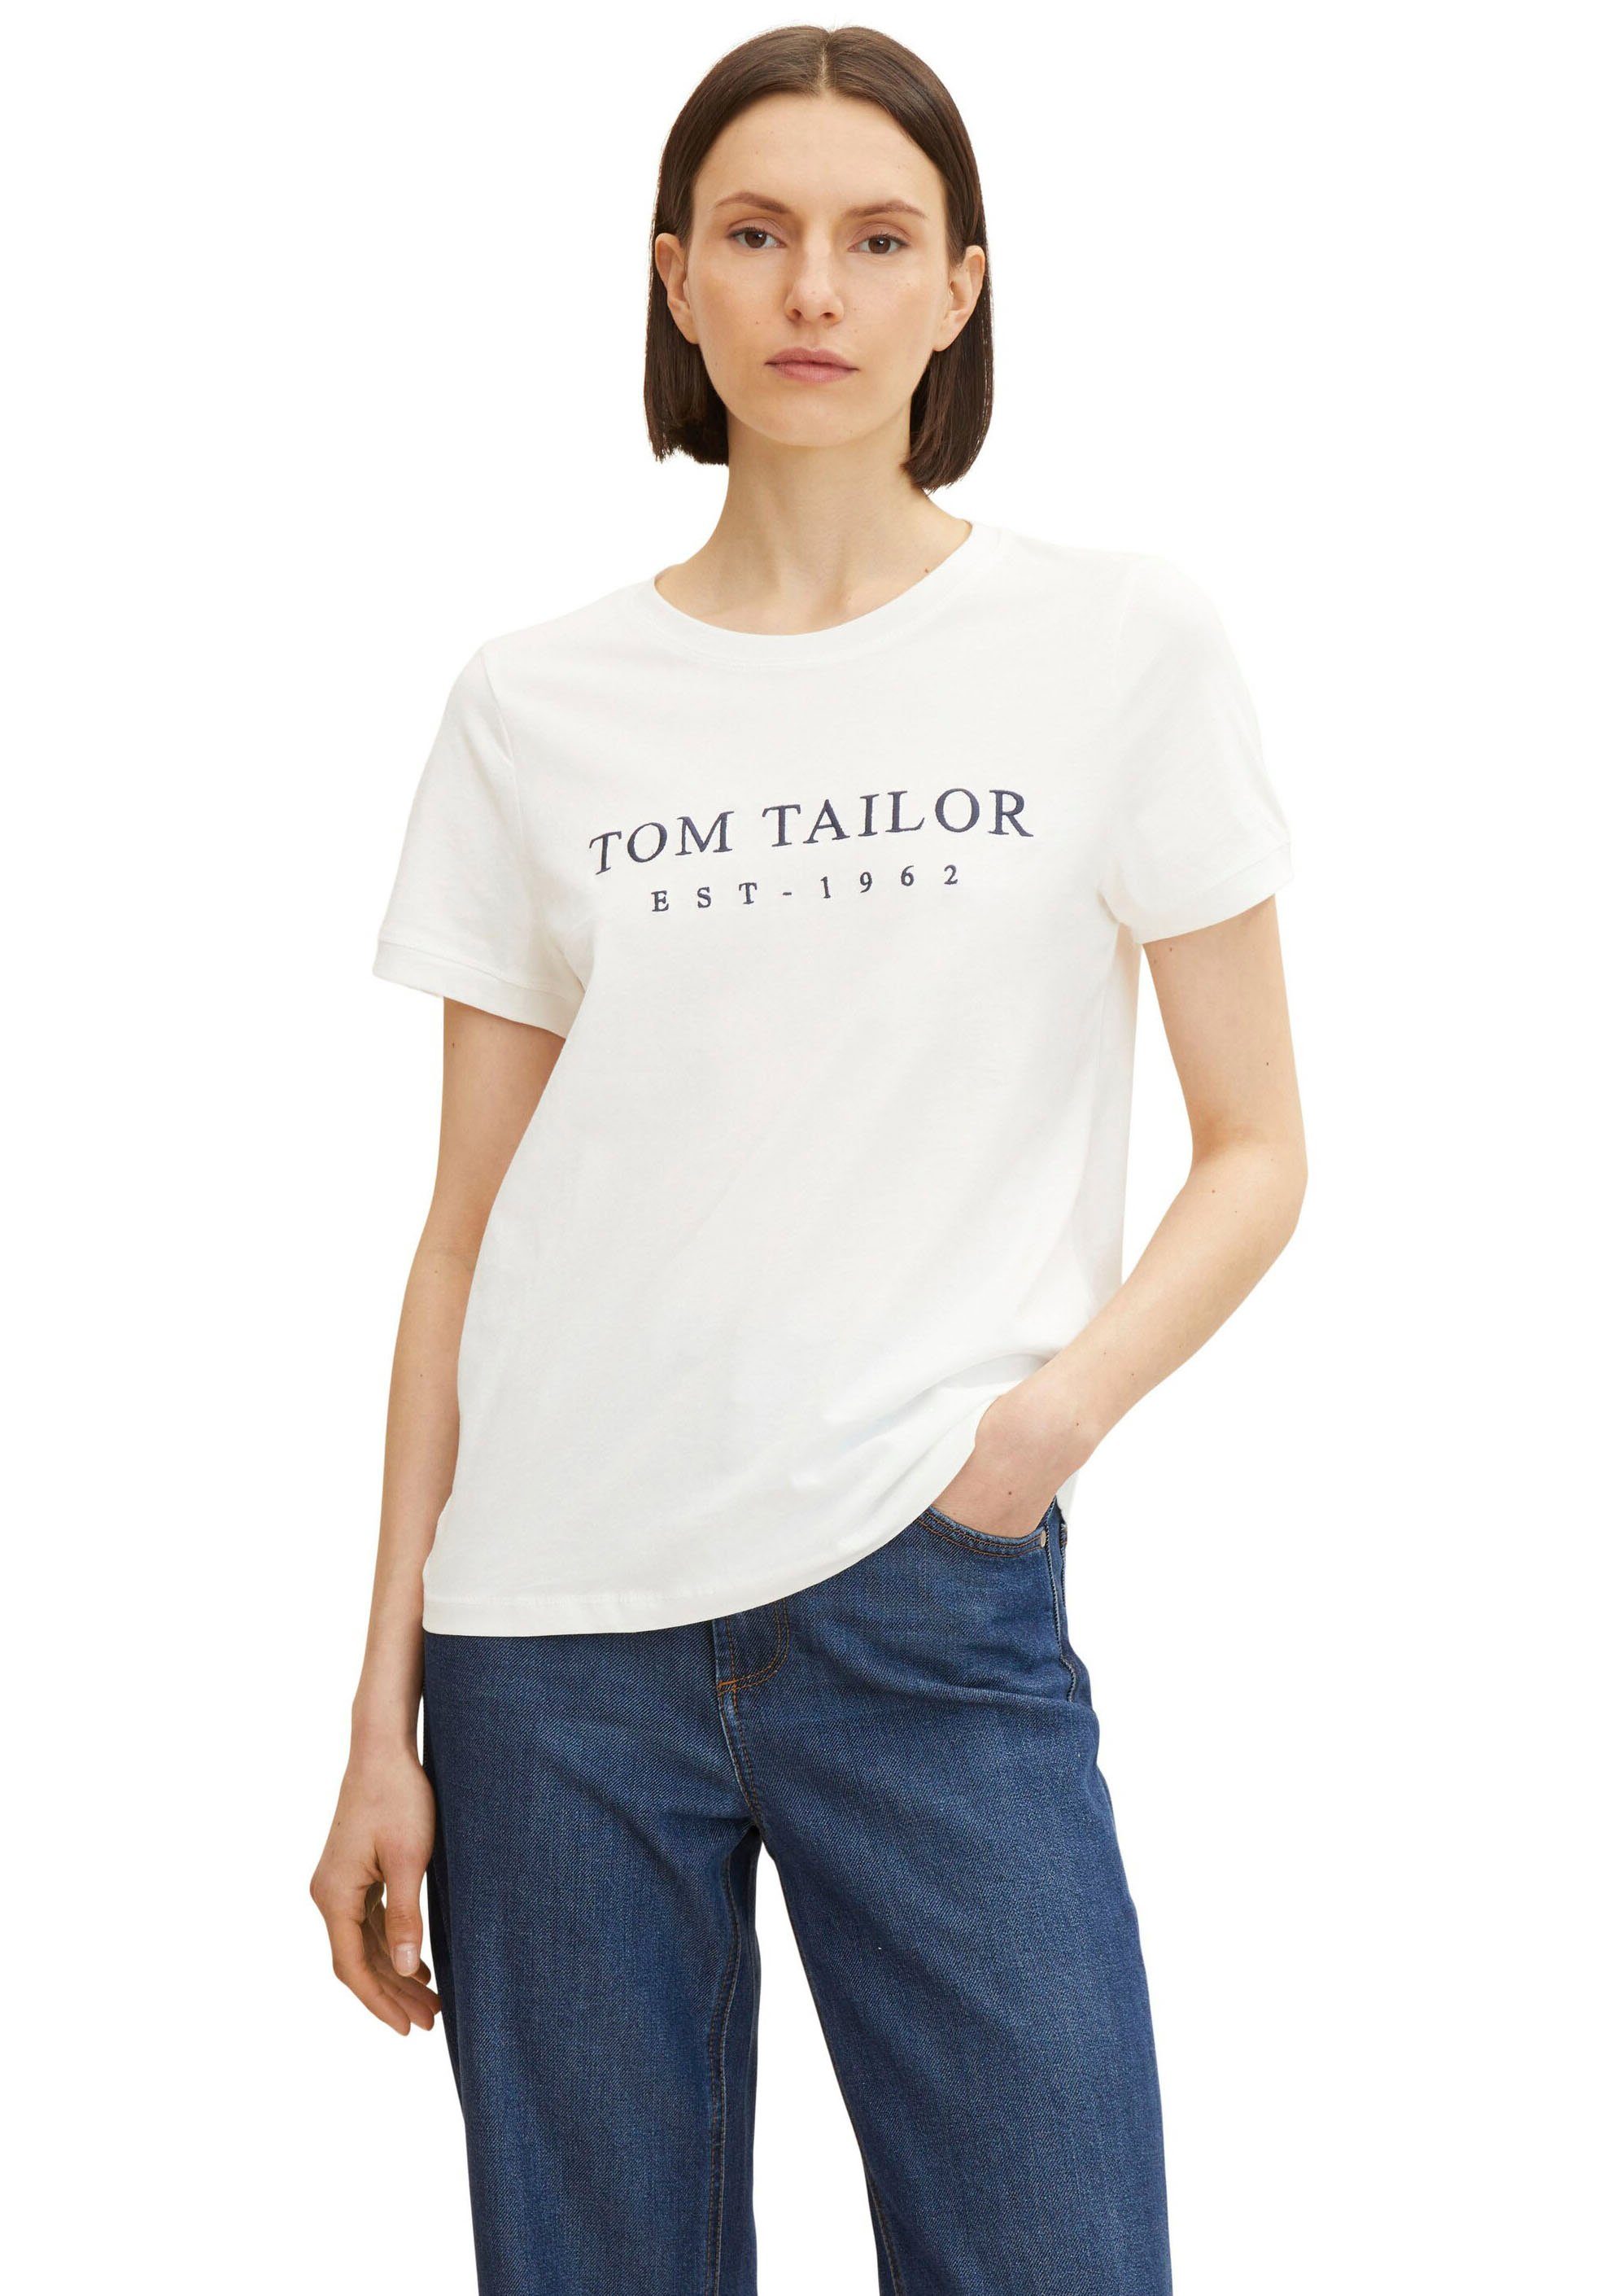 Tom Tailor Damen T-Shirts online kaufen | OTTO